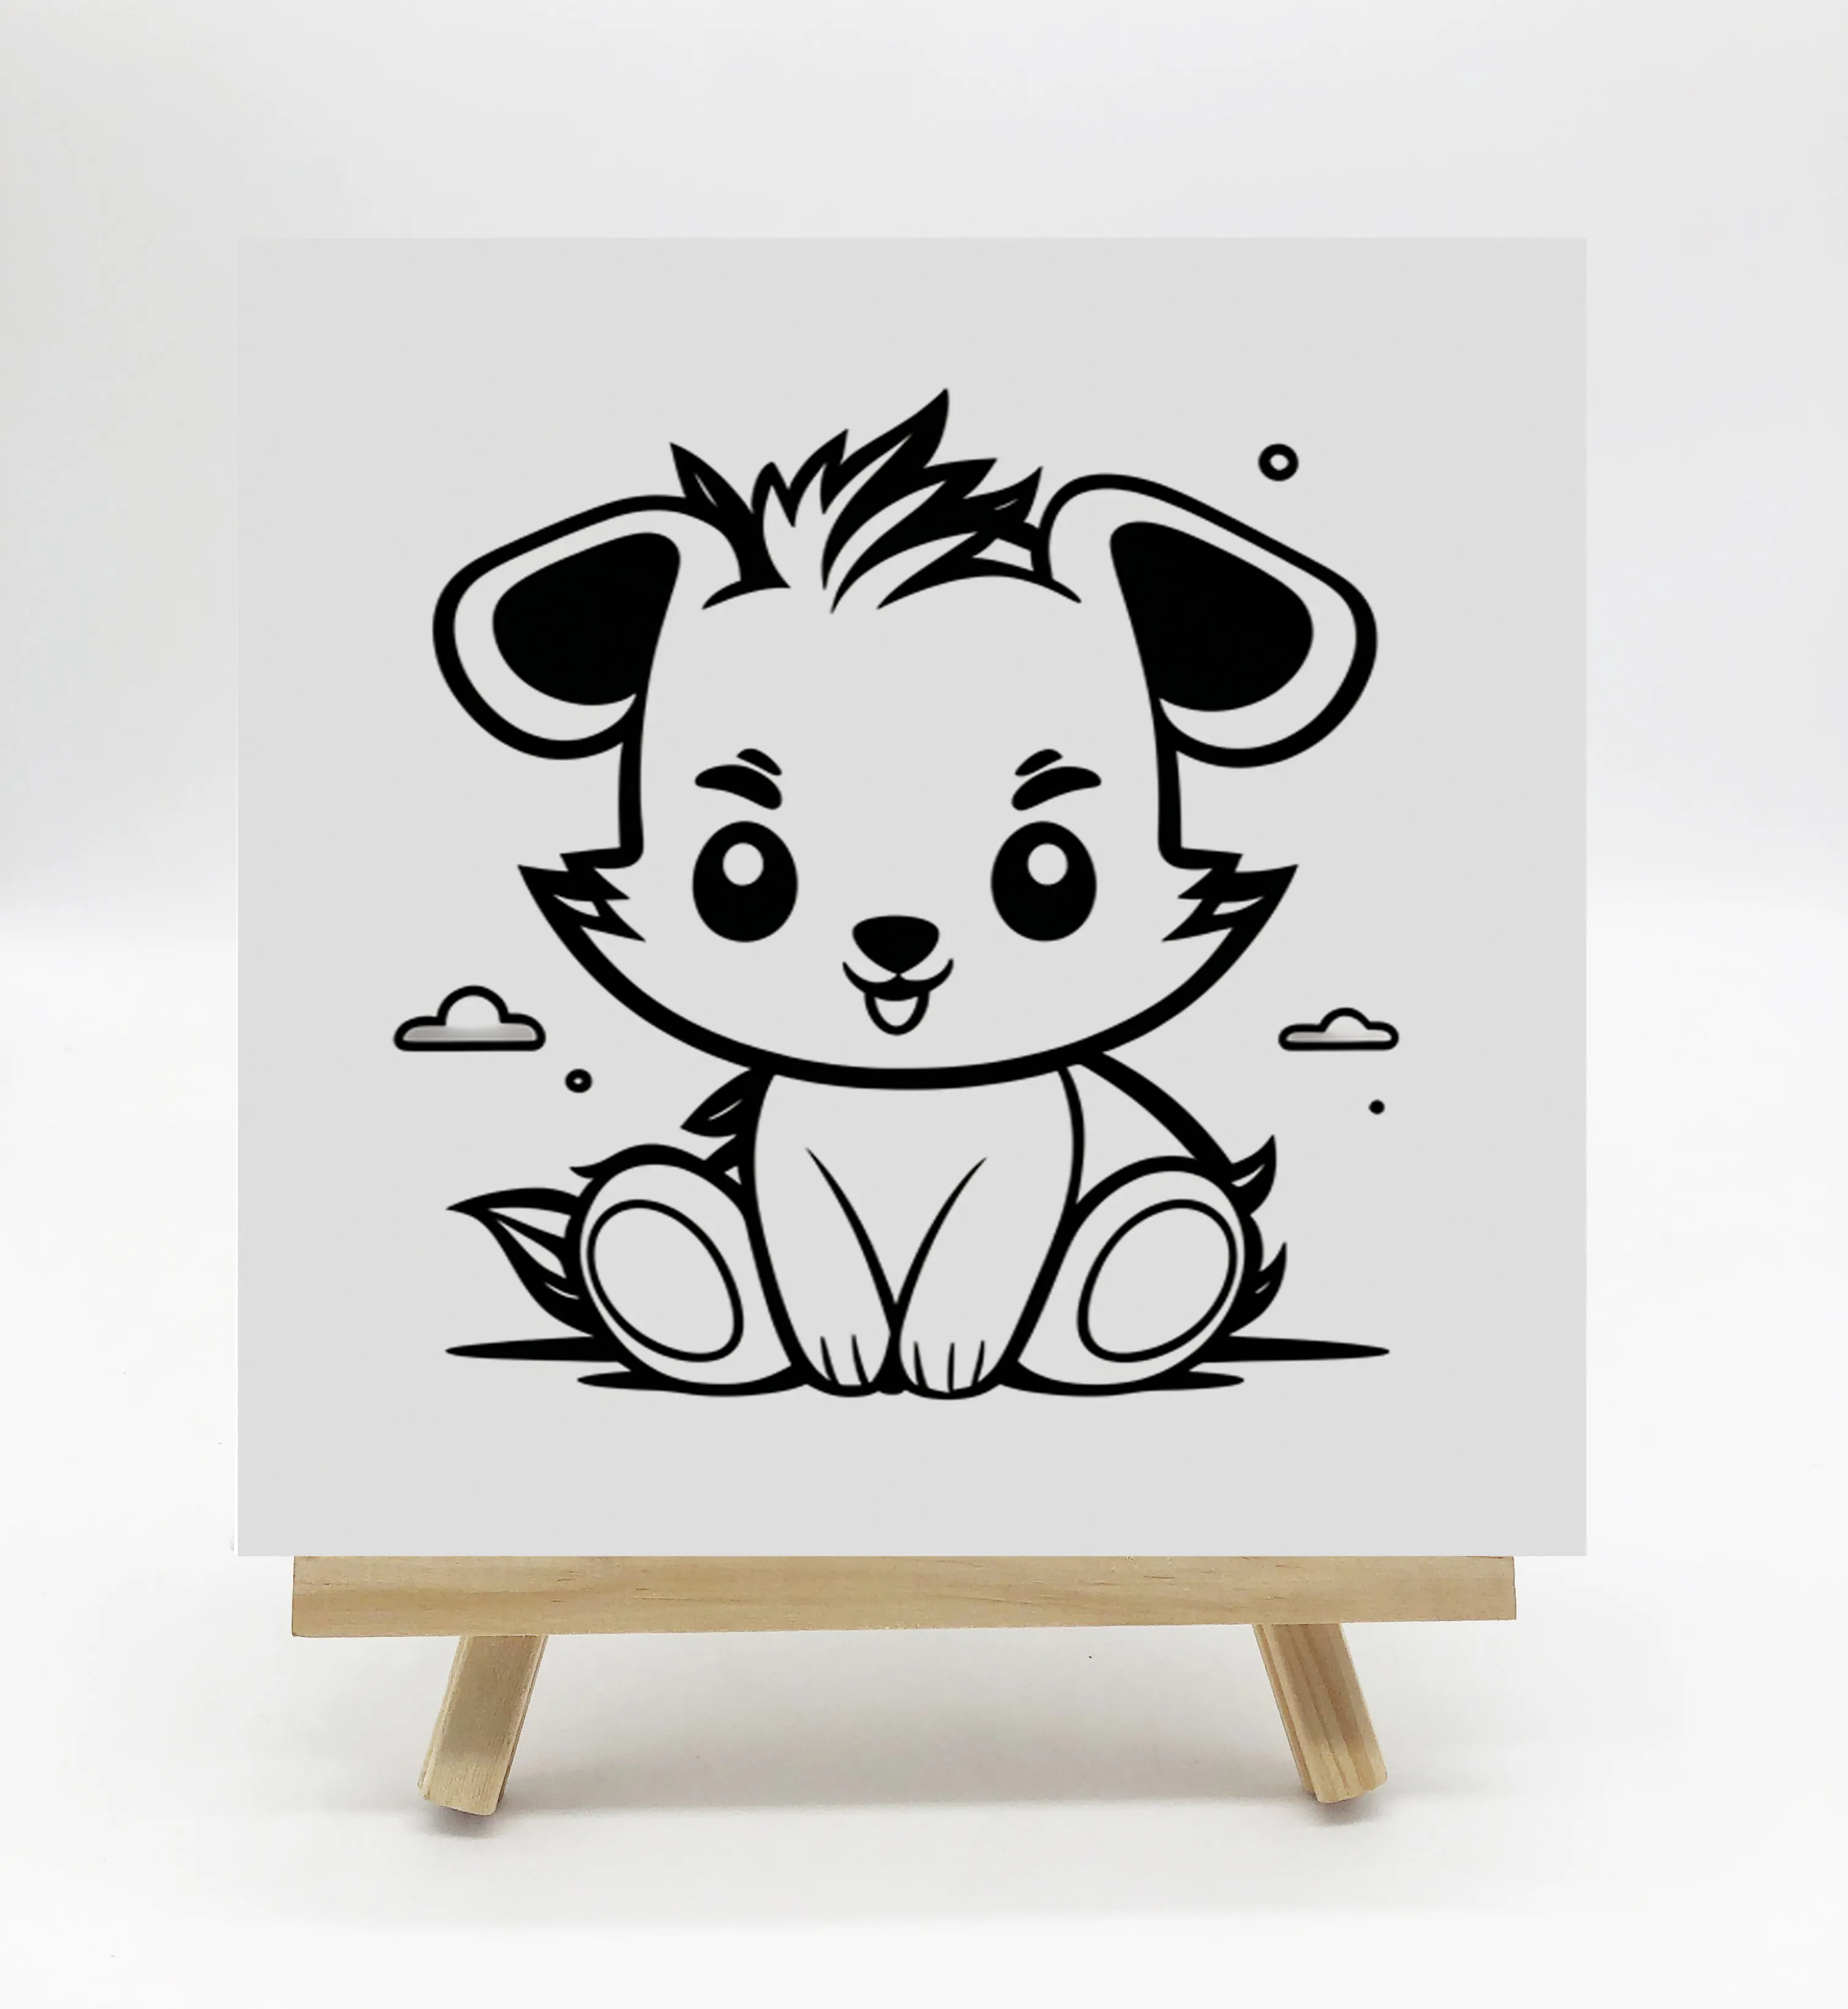 नई डिजाइन ऑयल पेंटिंग और वॉल आर्ट आर्टवर्क रंगीन प्यारा कुत्ता 30*30 सेमी बच्चों की ड्राइंग के लिए नंबरों द्वारा DIY पेंटिंग